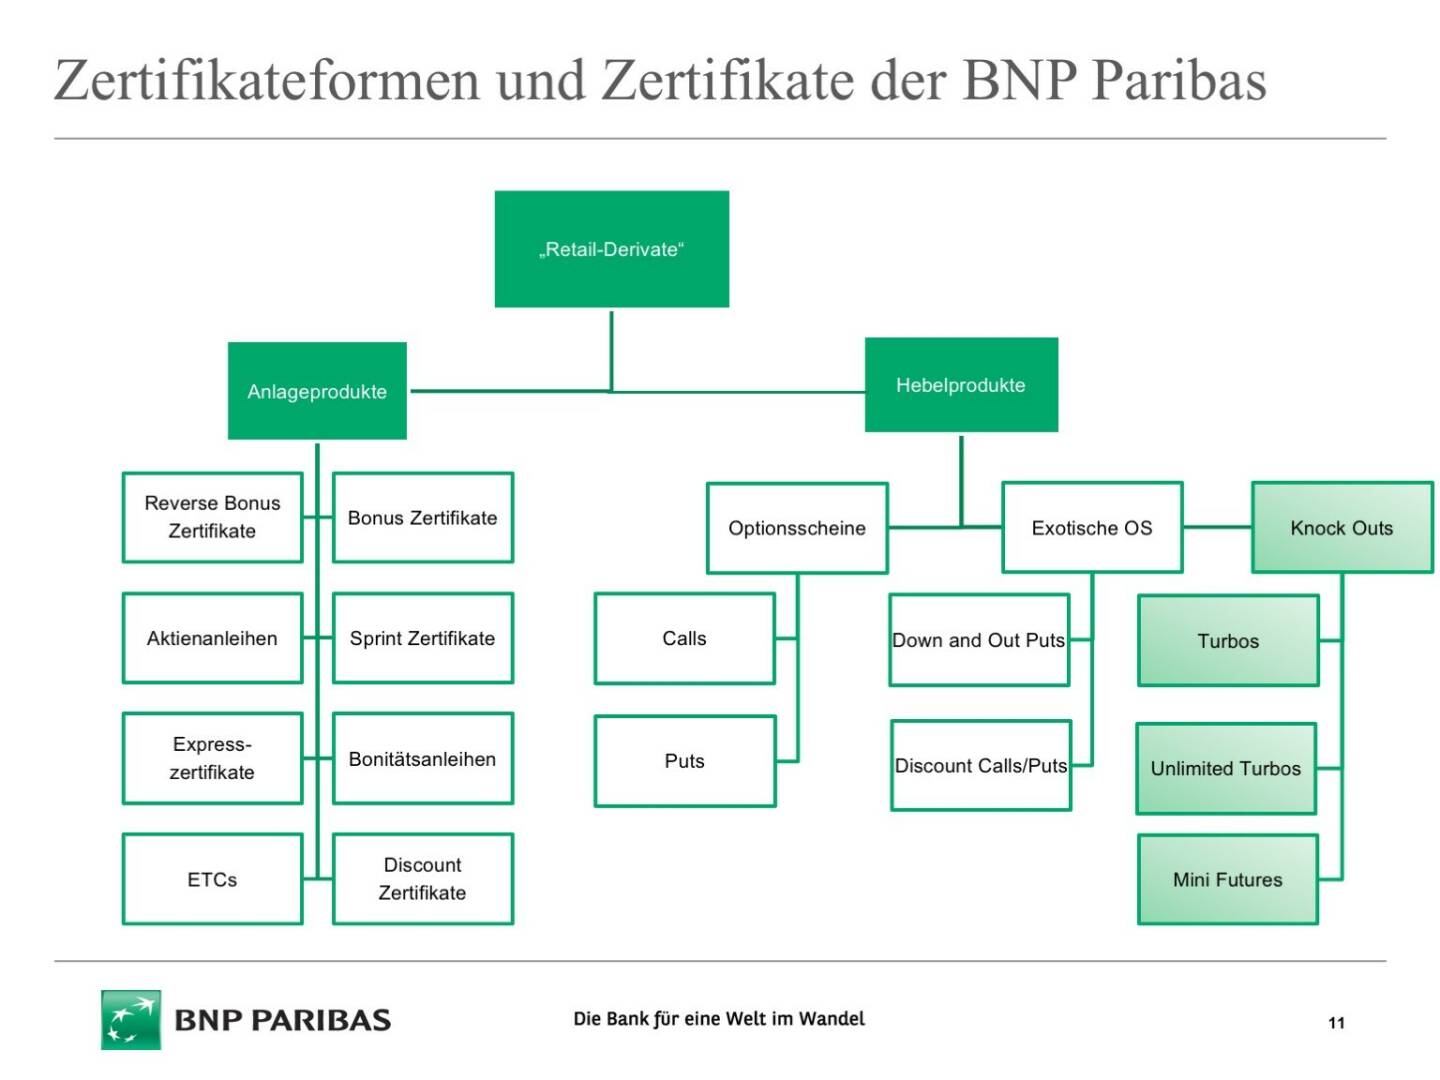 Präsentation BNP Paribas - Zertifikateformen